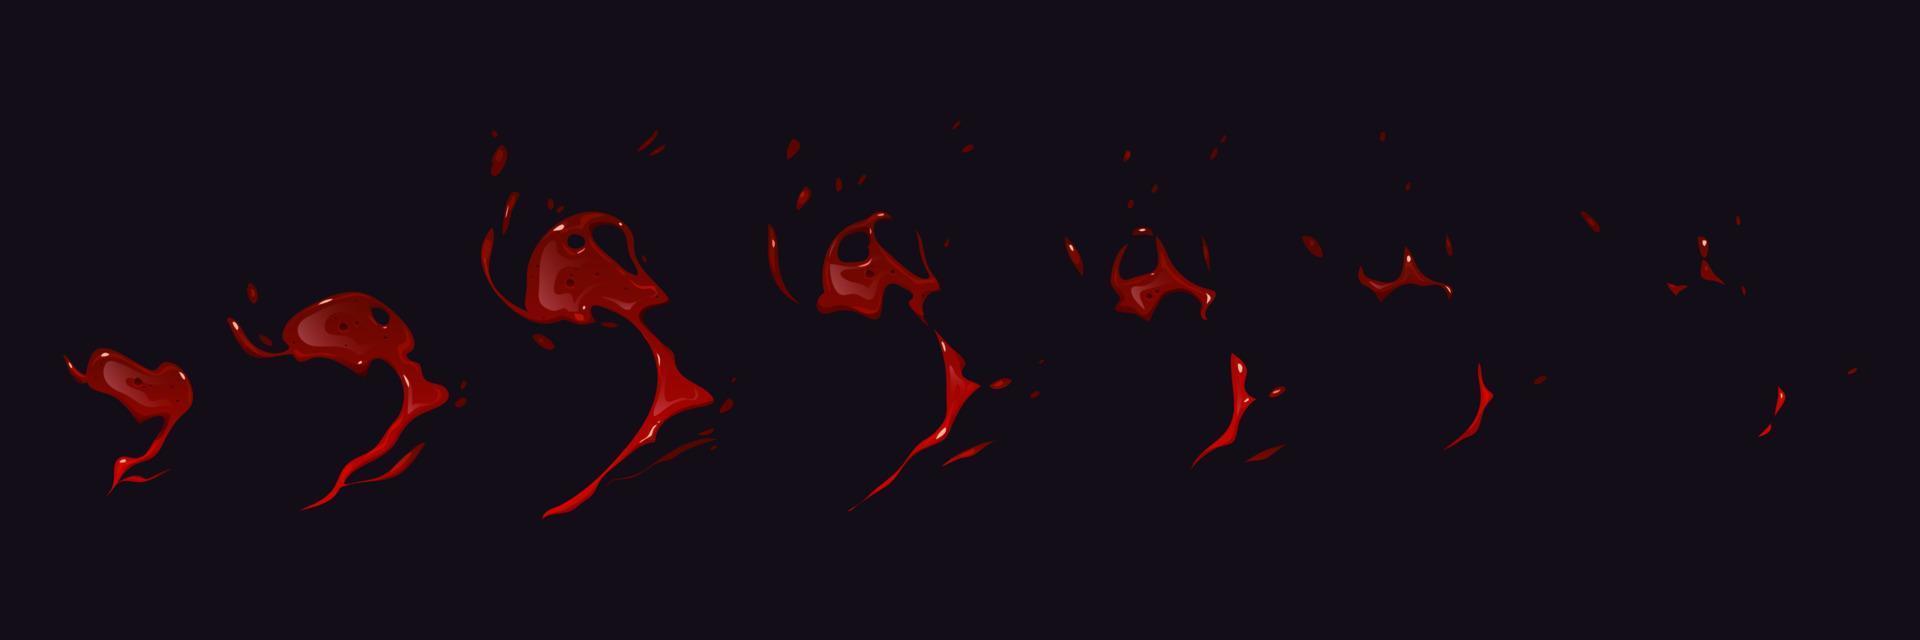 Blutspritzer-Animation auf schwarzem Hintergrund vektor